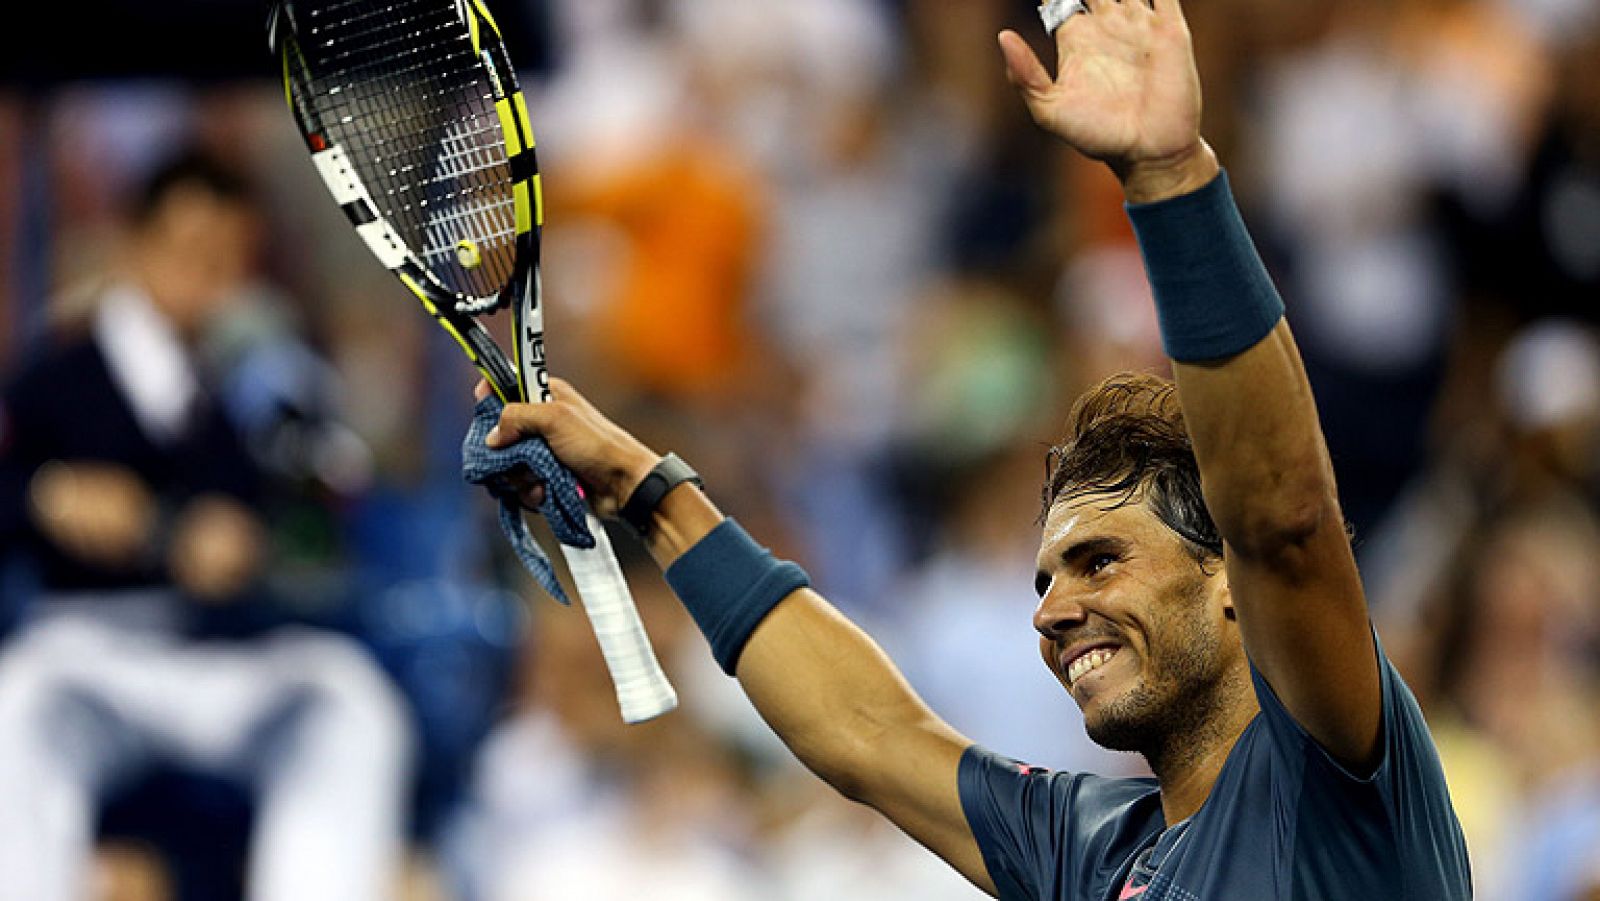 Después de una temporada de parón por lesión, Nadal ha vuelto más fuerte que nunca y está completando un 2013 espectacular que podría coronar con el triunfo en el US Open.